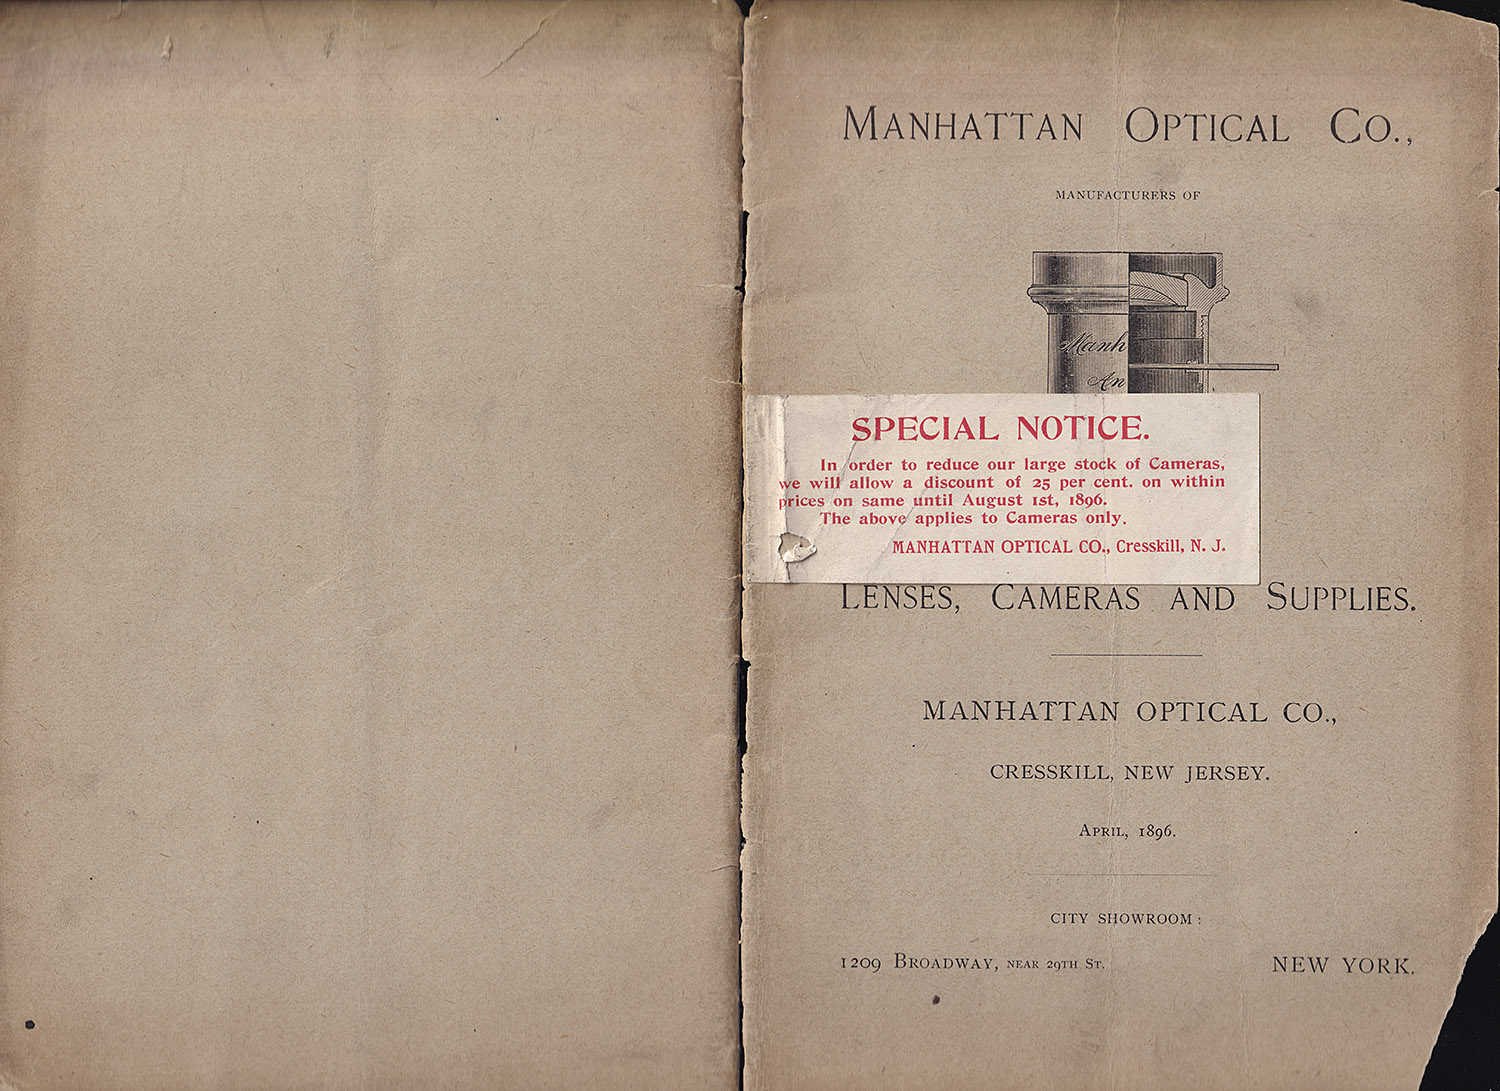 1310.manhattan.optical-1896-covers-1500.jpg